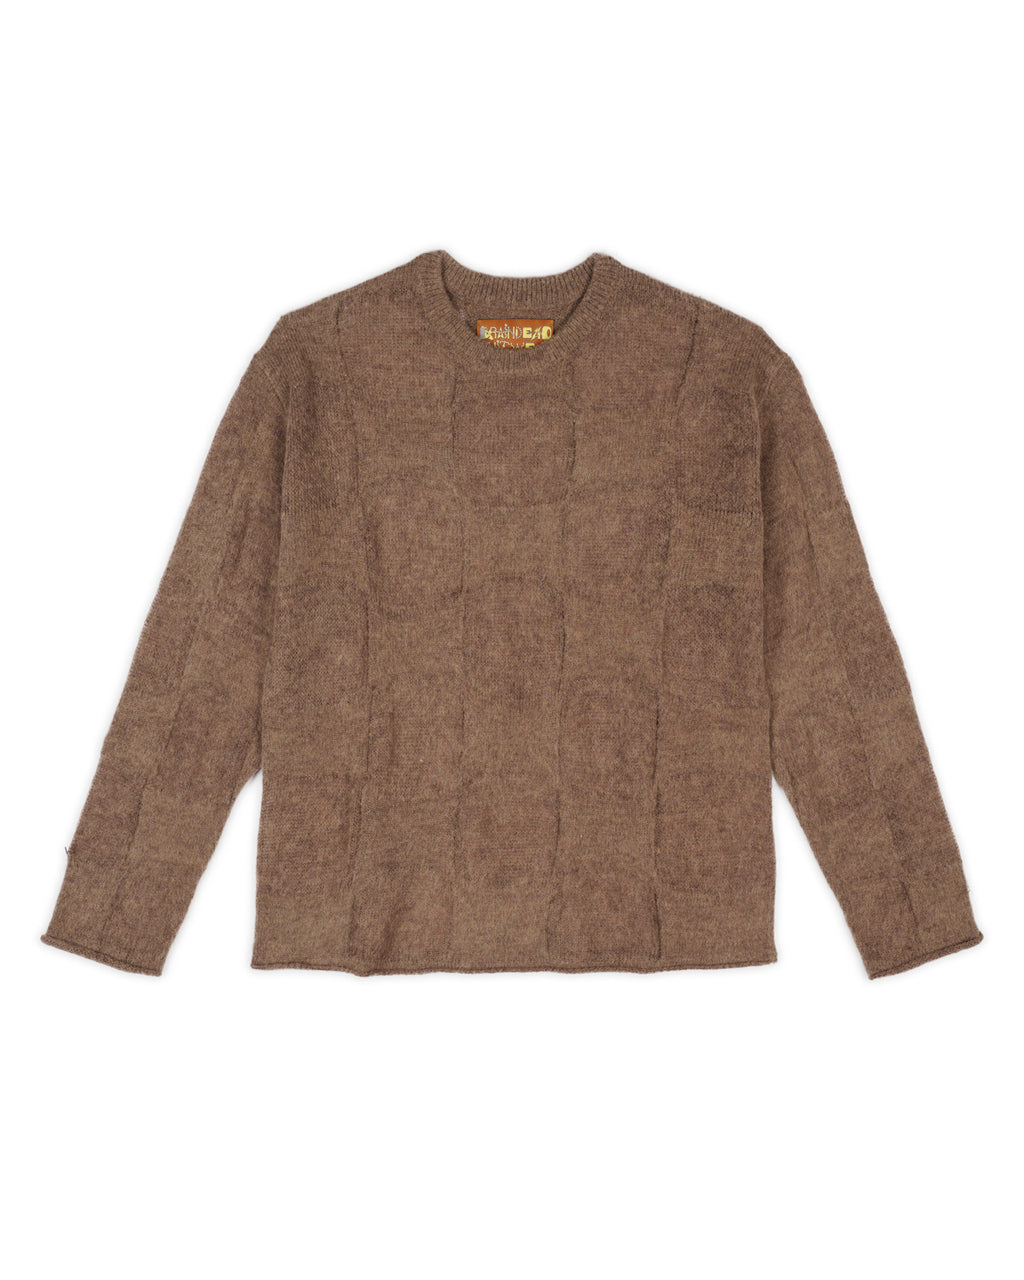 Fuzzy Threadbare Warped Check Sweater - Brown 1